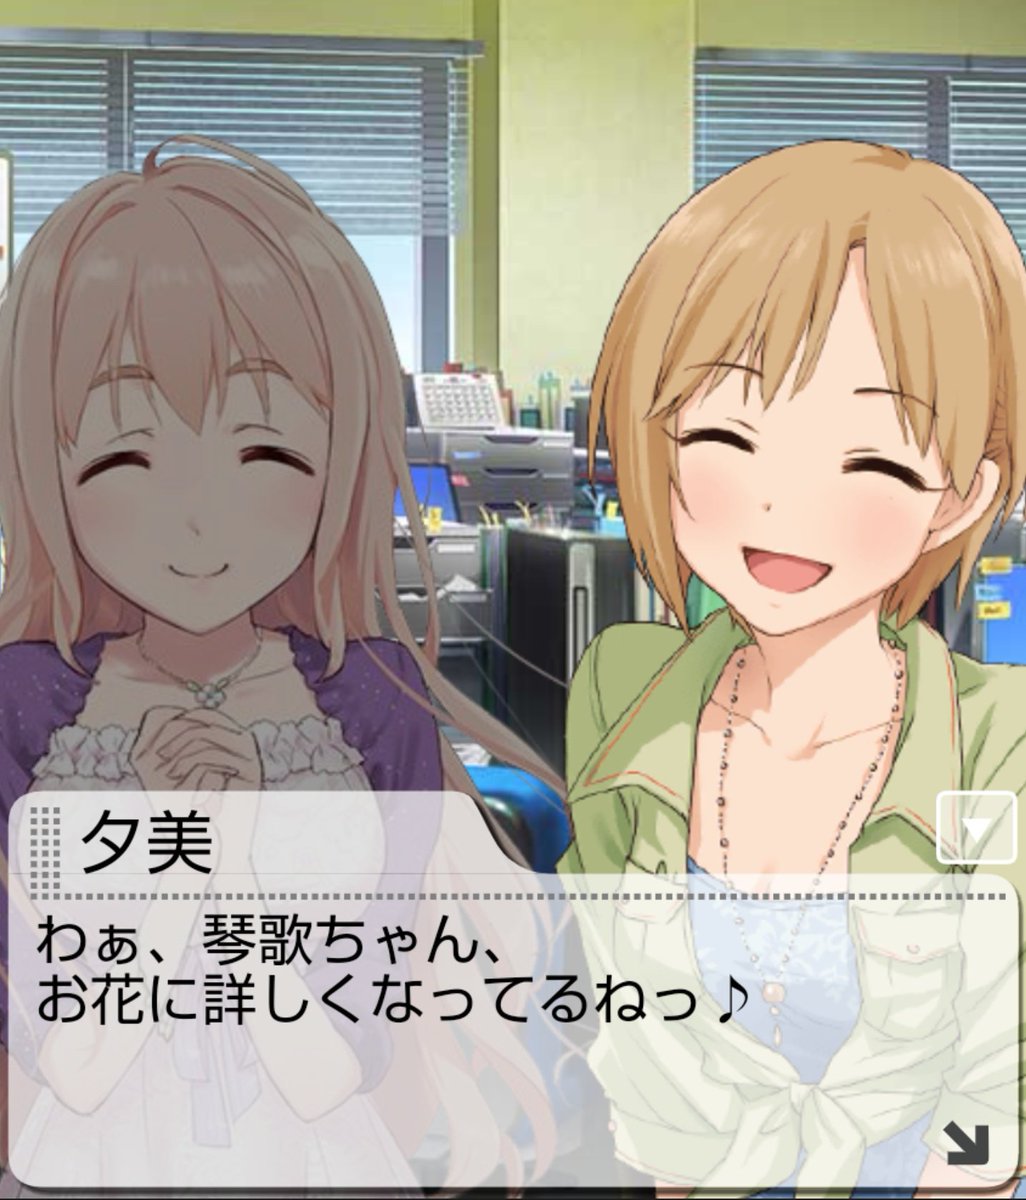 琴歌ちゃんにとって夕美ちゃんは、歳の近い友人であると同時に、夕美さん先生なんですよね。 